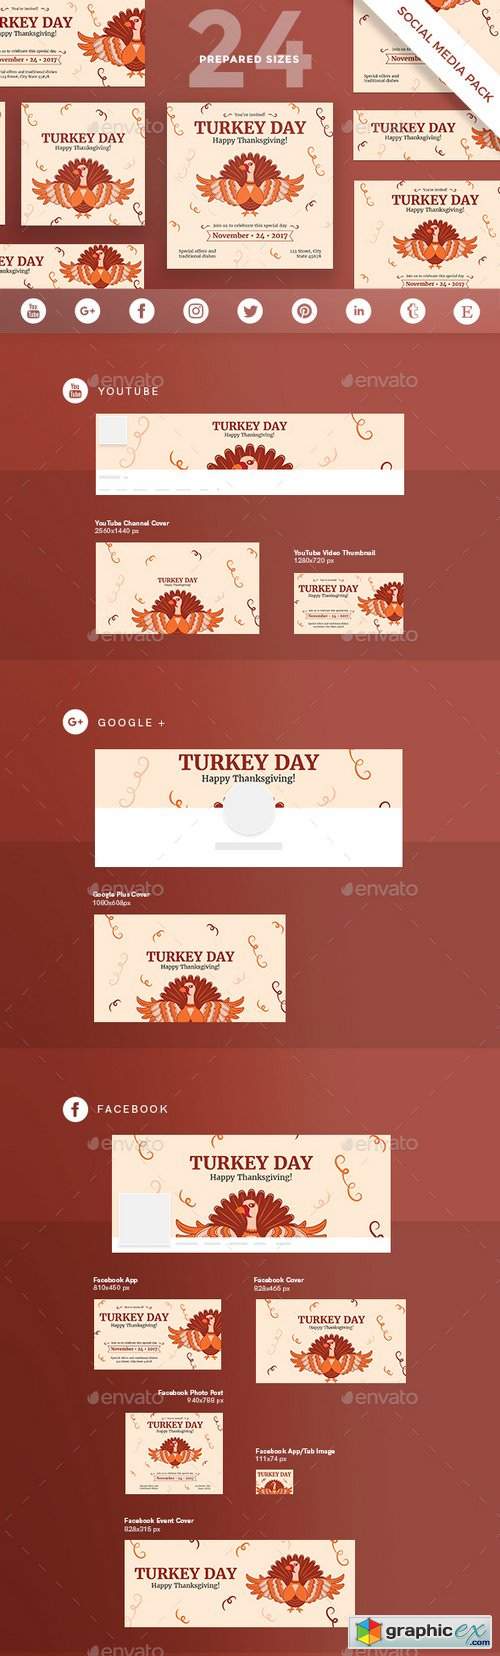 Turkey Day Social Media Pack